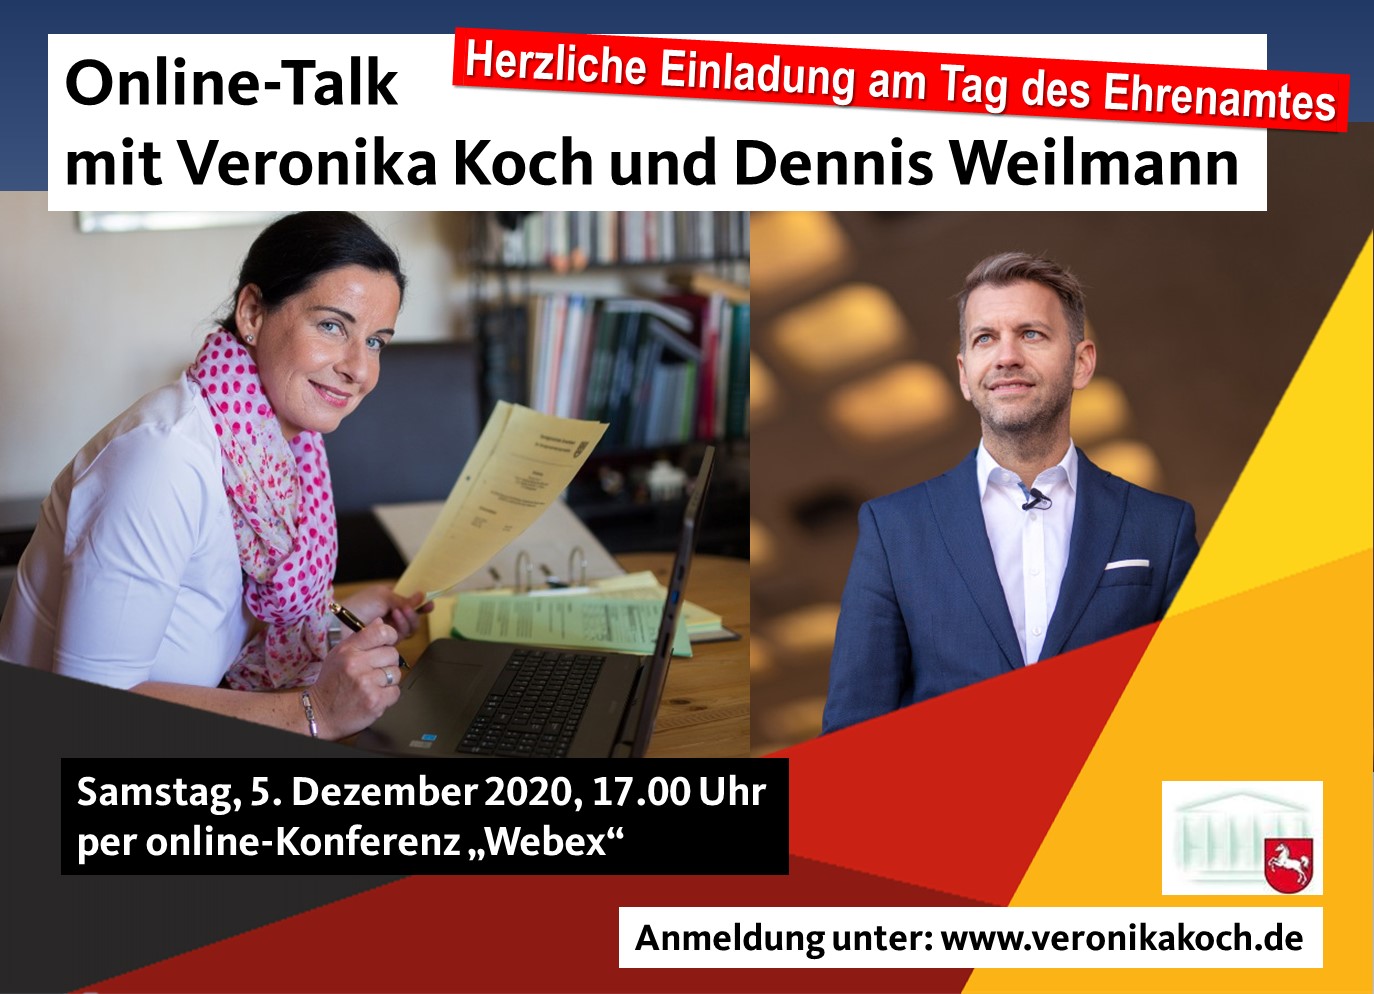 Online-Talk am Tag des Ehrenamtes mit Veronika Koch und Dennis Weilmann.